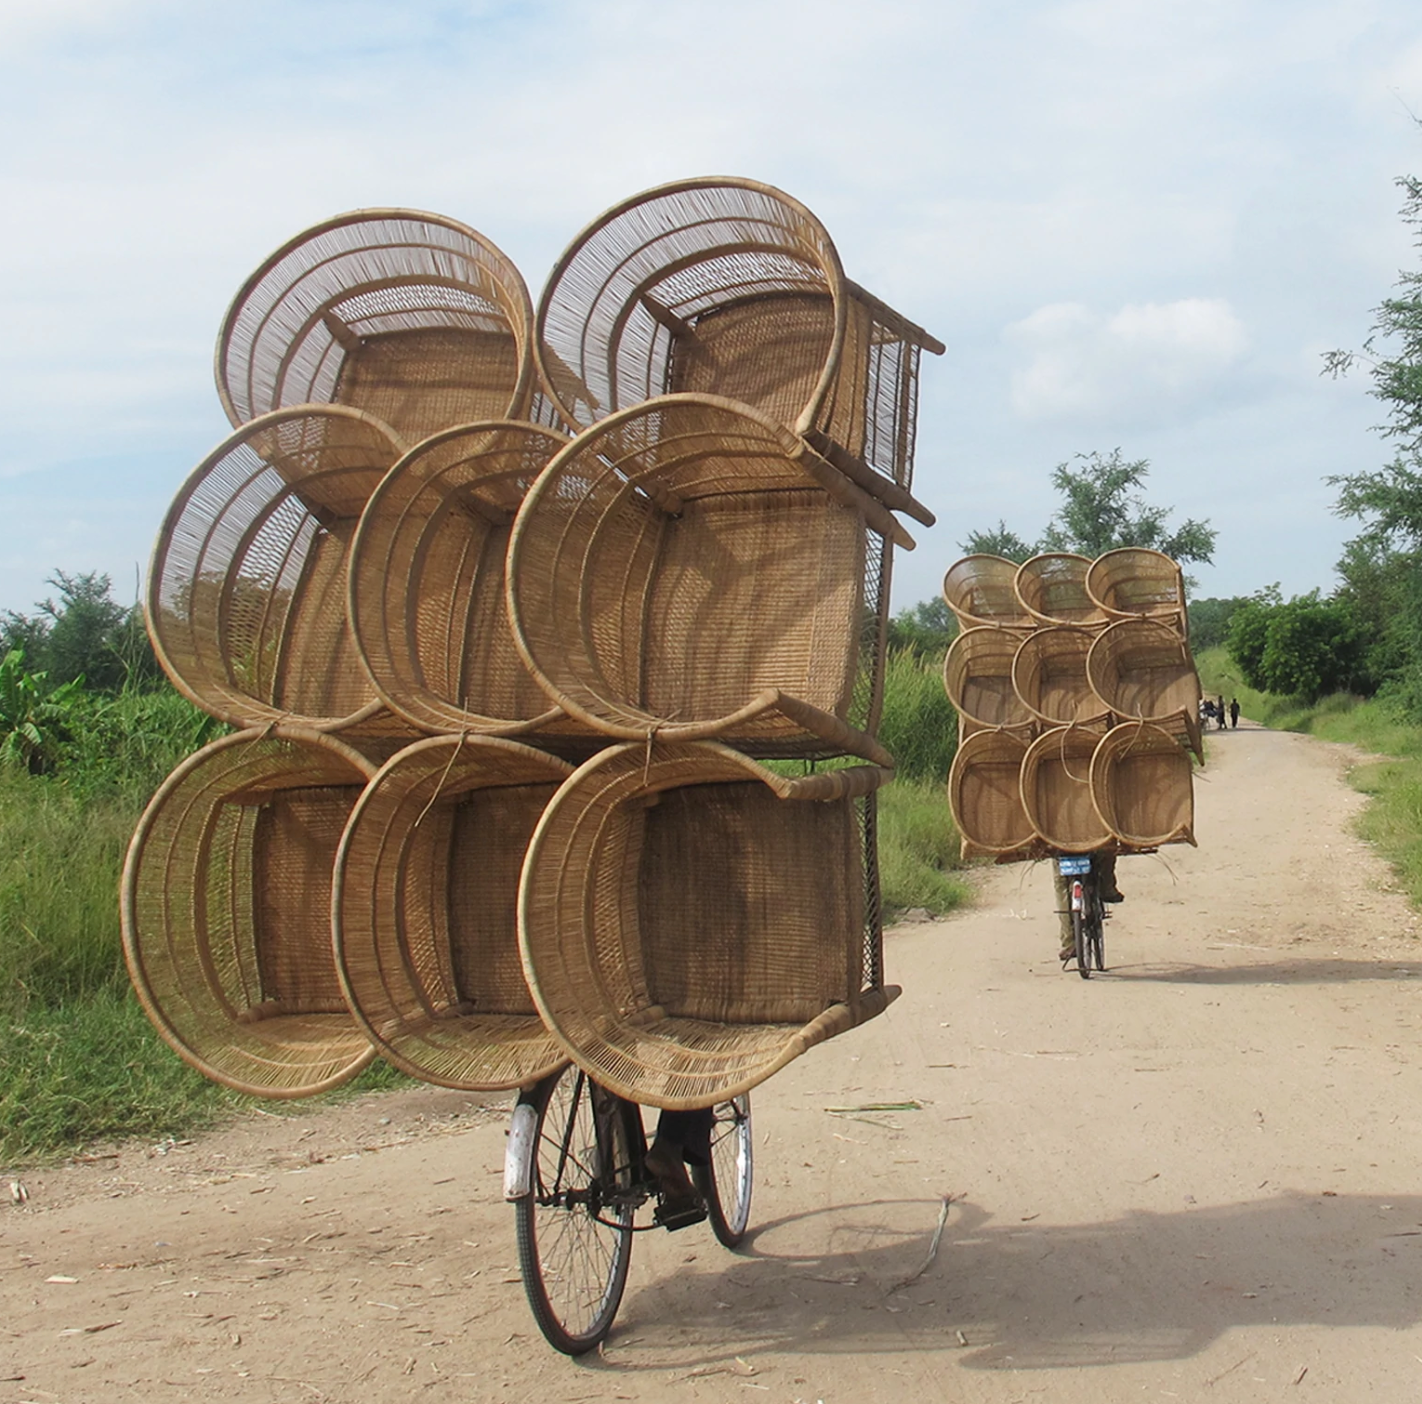 Artisans transporting goods in Malawi.